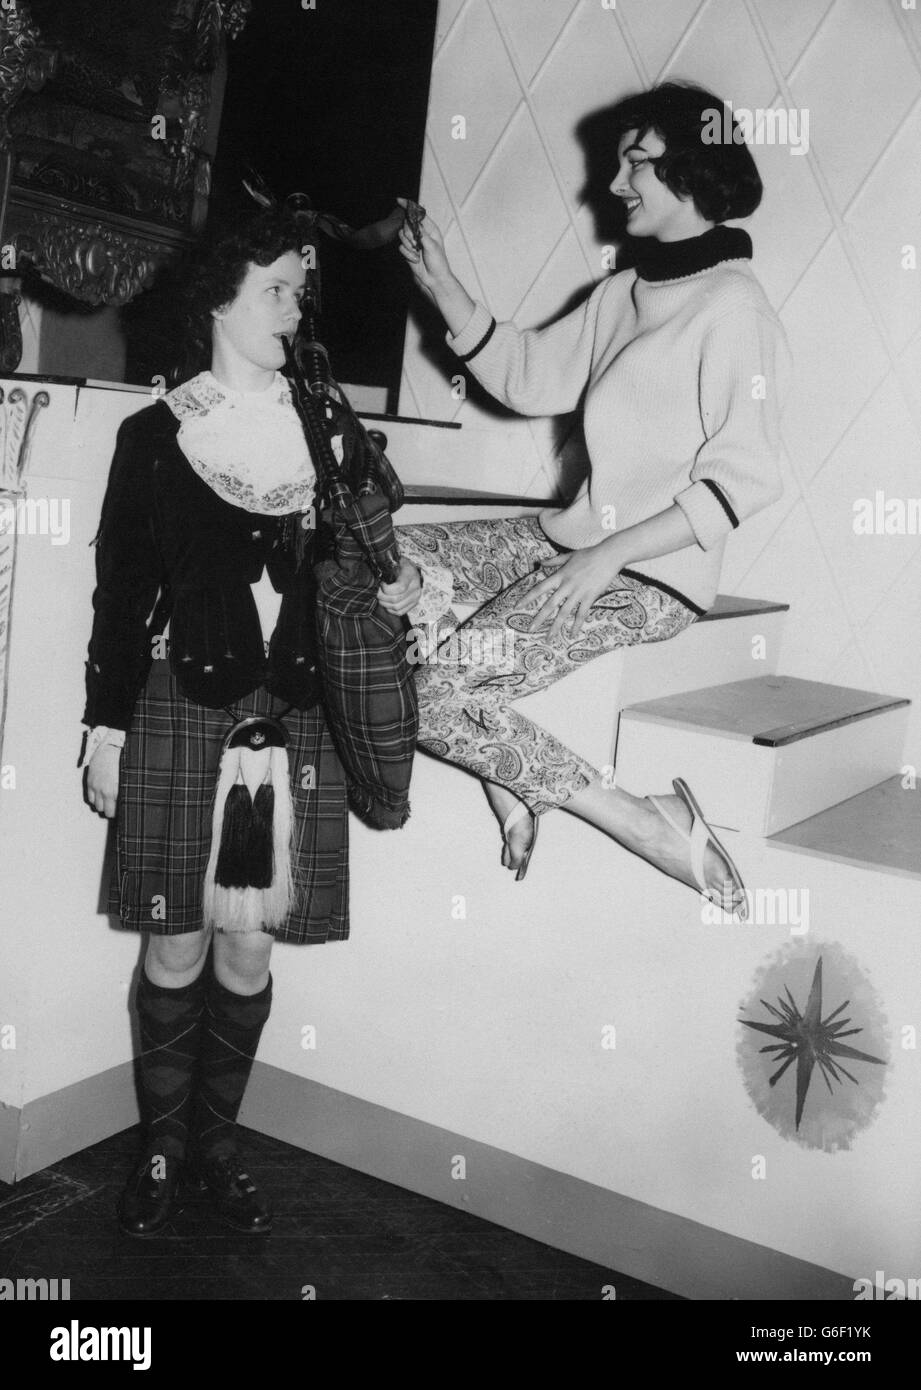 Miss Germania, studentessa e modella Petra Schurmann, ammira le cornamuse trasportate da Dagenham Girl Piper Mary Wade, 16 anni, che stava per dimostrarle al Lyceum, Strand, Londra. Sono stati entrambi lì per una prova della finale del concorso Miss World di stasera, che vedrà esibirsi i Dagenham Girl Pipers. Foto Stock